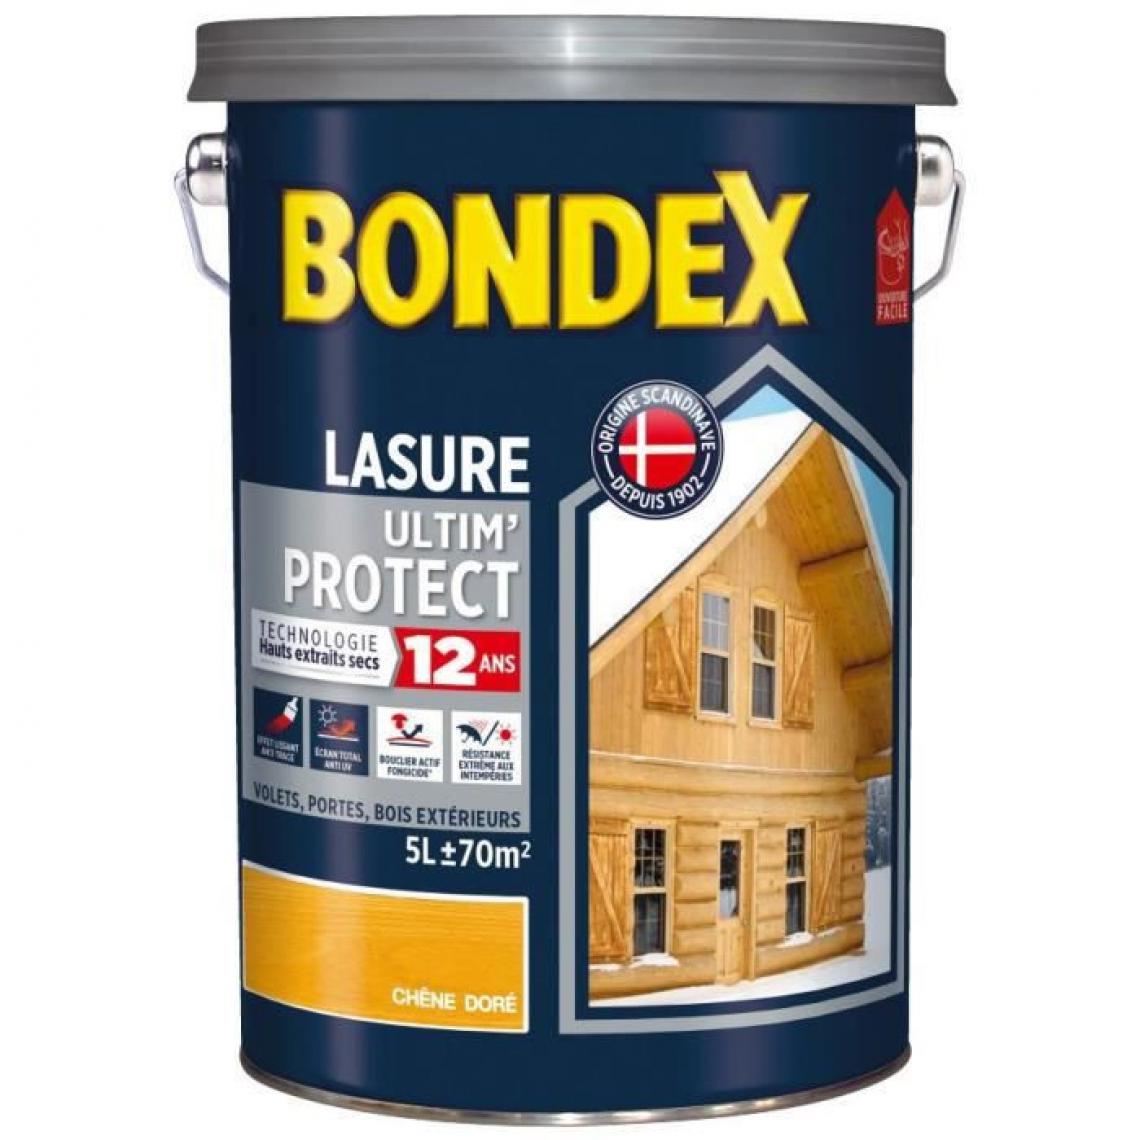 Bondex - BONDEX asure Ultim Protect 12 Ans - Chene Dore Satin, 5L - Peinture & enduit rénovation